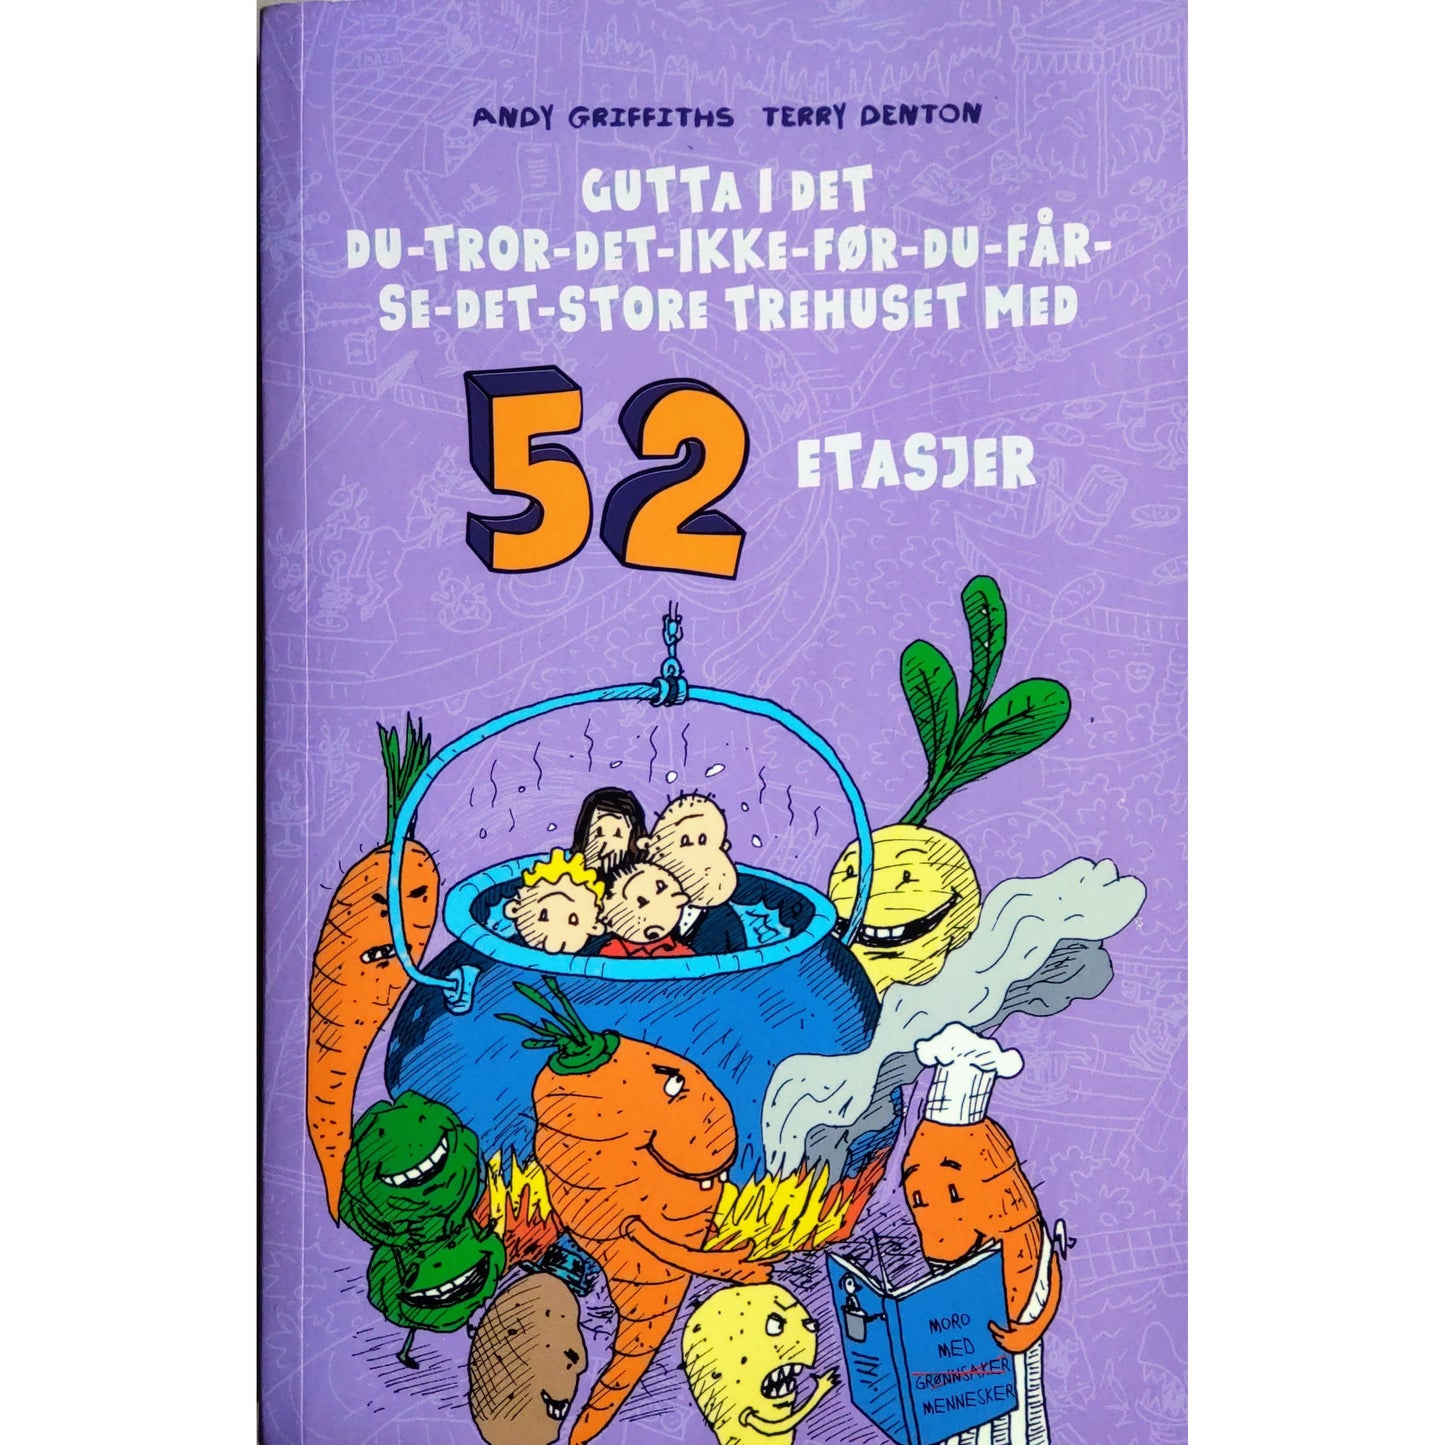 Gutta i trehuset med 52 etasjer- Brukte barnebøker av Andy Griffiths